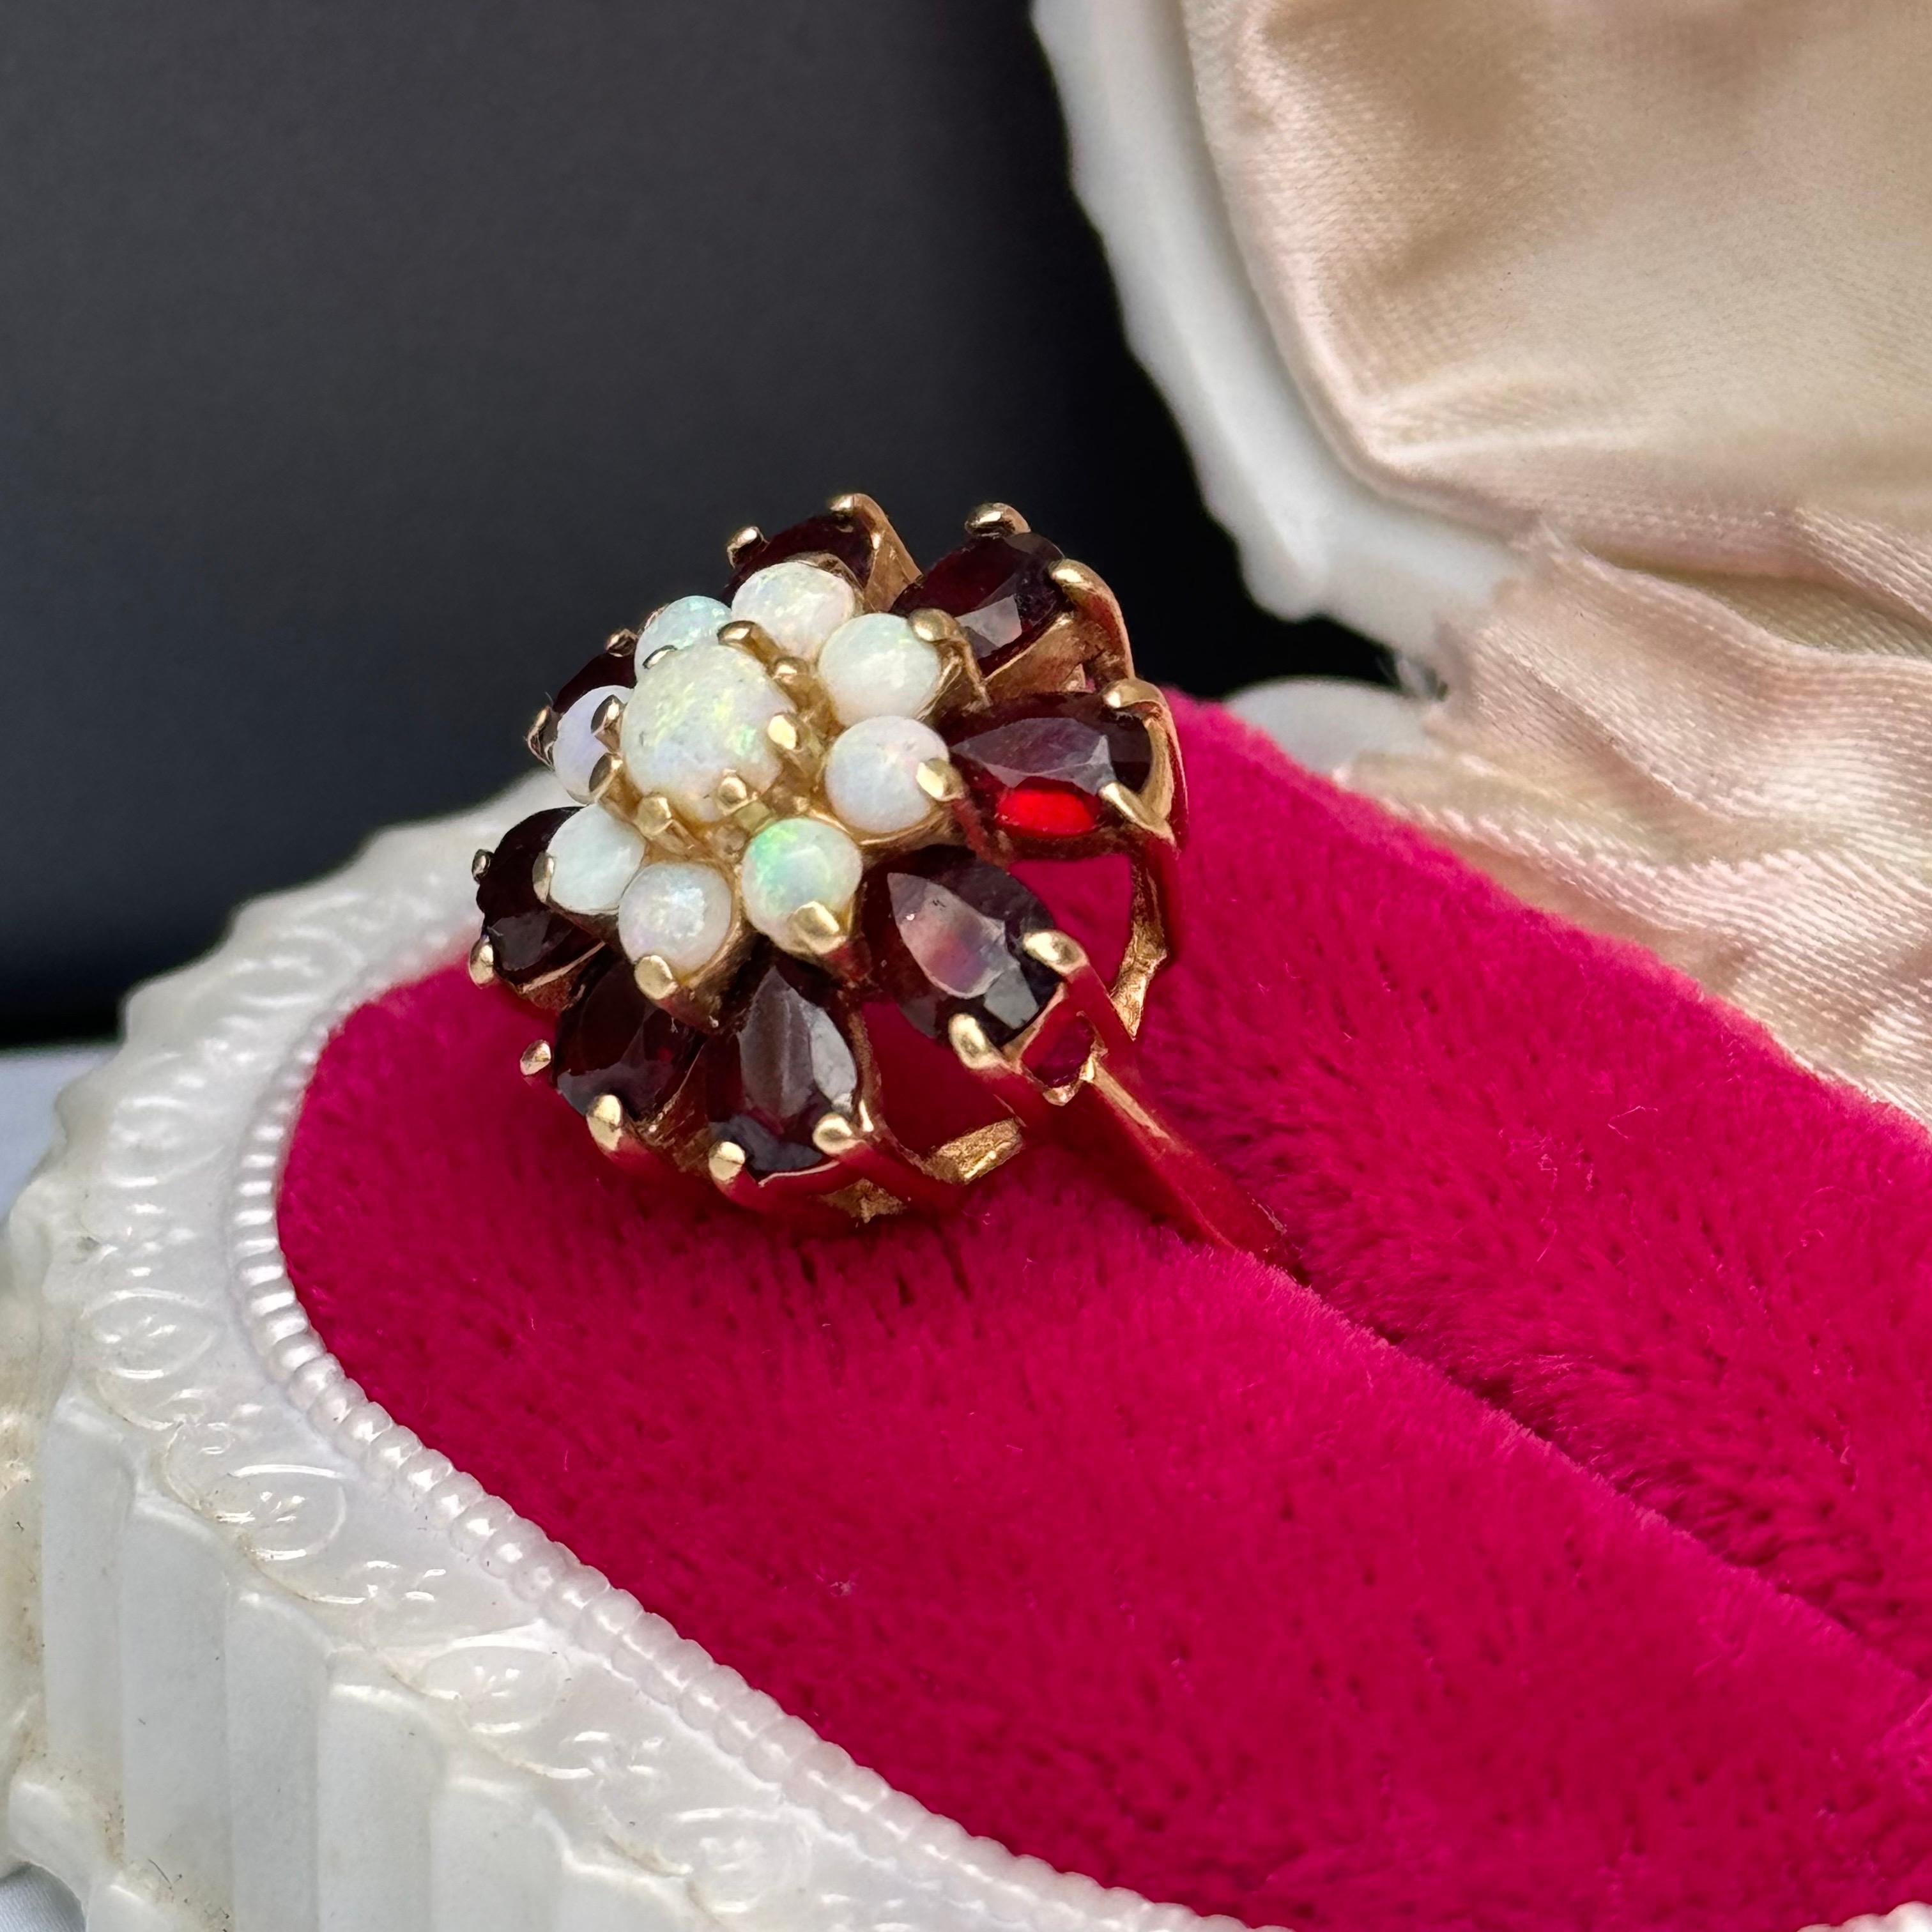 Vintage By  Victorian Revival Opal-Granat-Cluster-Cocktailring aus 14kt Gold, eine atemberaubende Hommage an die Eleganz der viktorianischen Ära. Dieser exquisite Ring besteht aus einer Gruppe von Opalen und Granaten, die in luxuriöses 14-karätiges